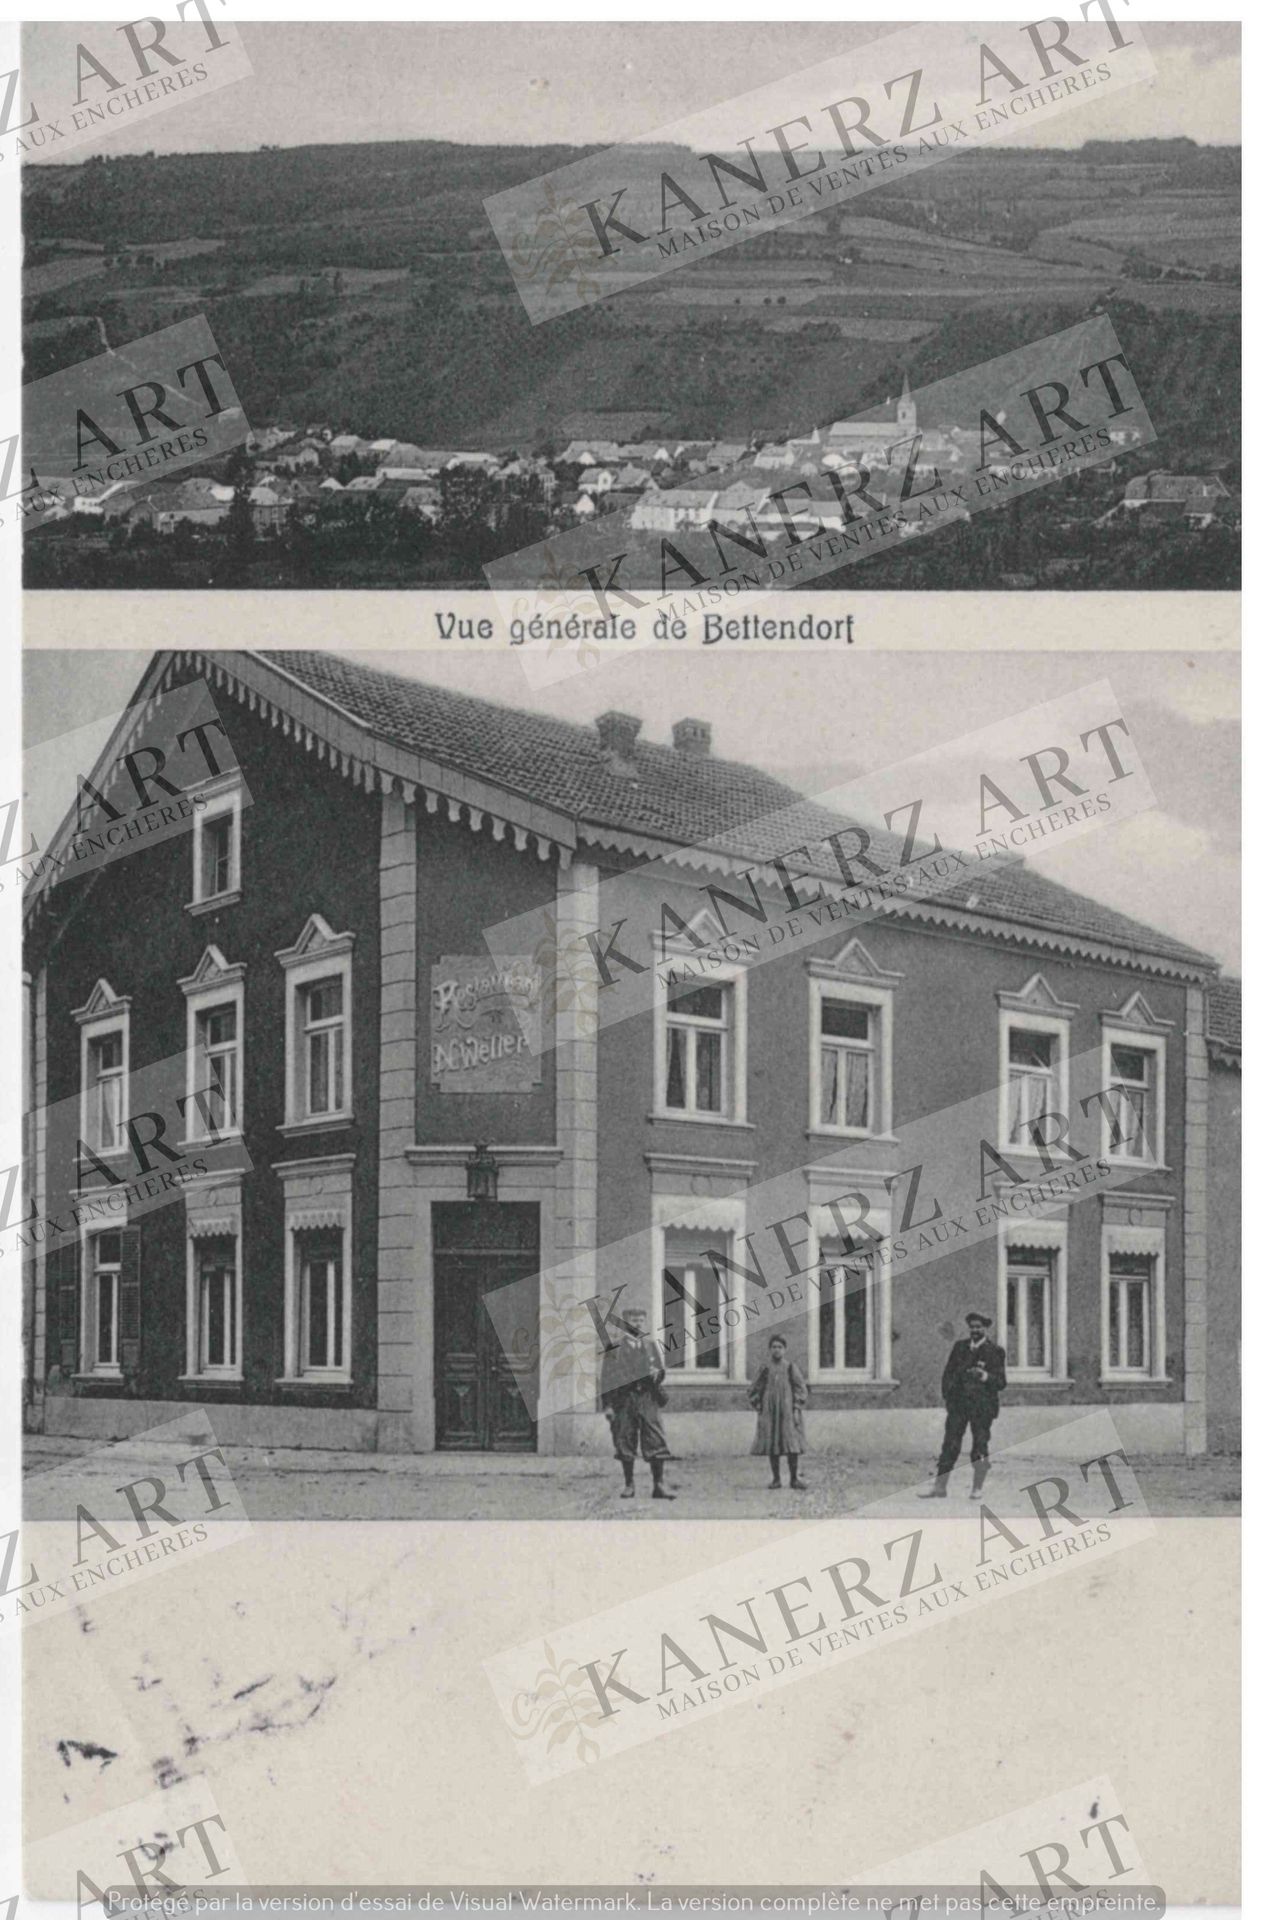 BETTENDORF : Vue générale, Wilhelmus Christnach #4202, ca. 1911